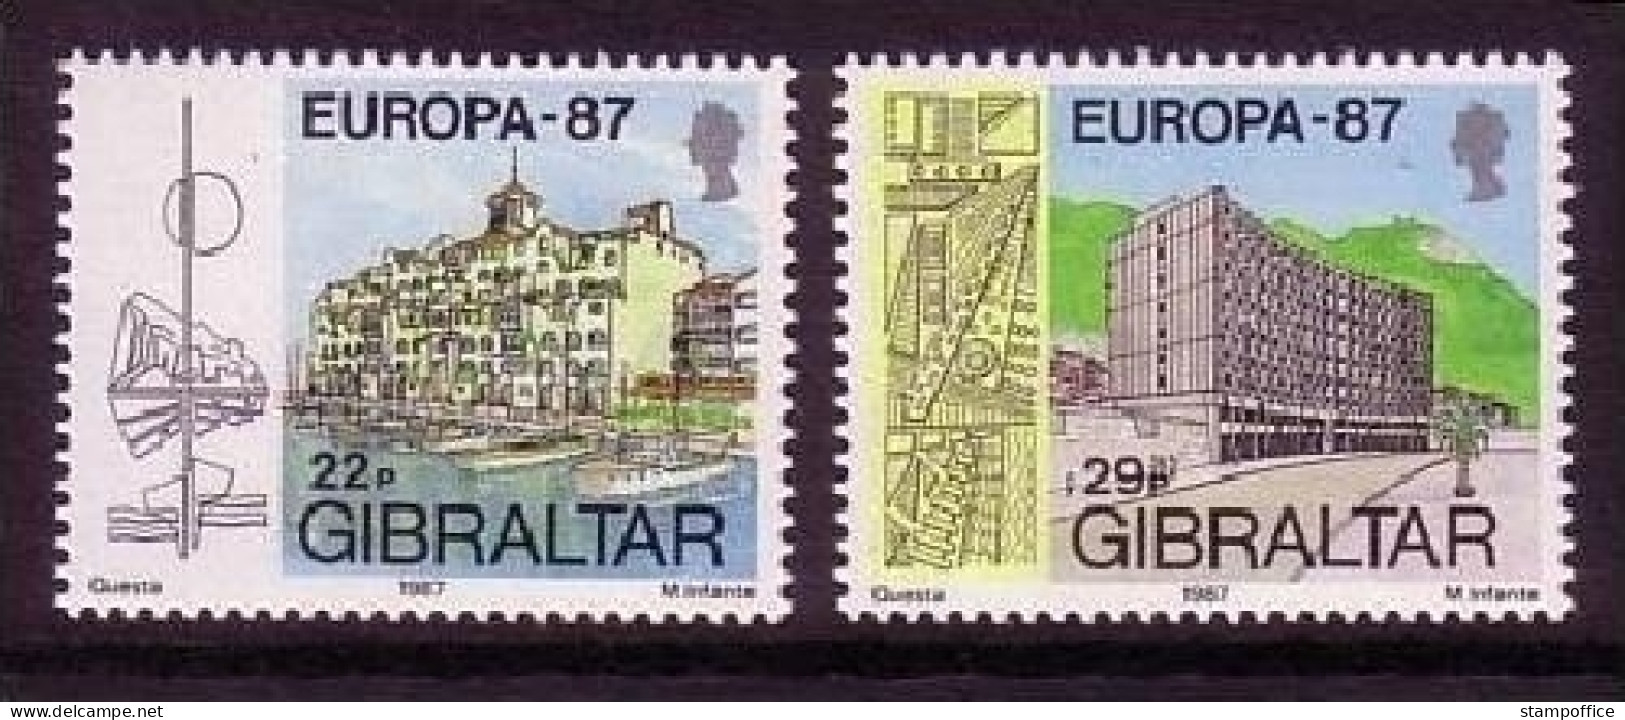 GIBRALTAR MI-NR. 519-520 POSTFRISCH EUROPA 1987 - MODERNE ARCHITEKTUR - Gibraltar